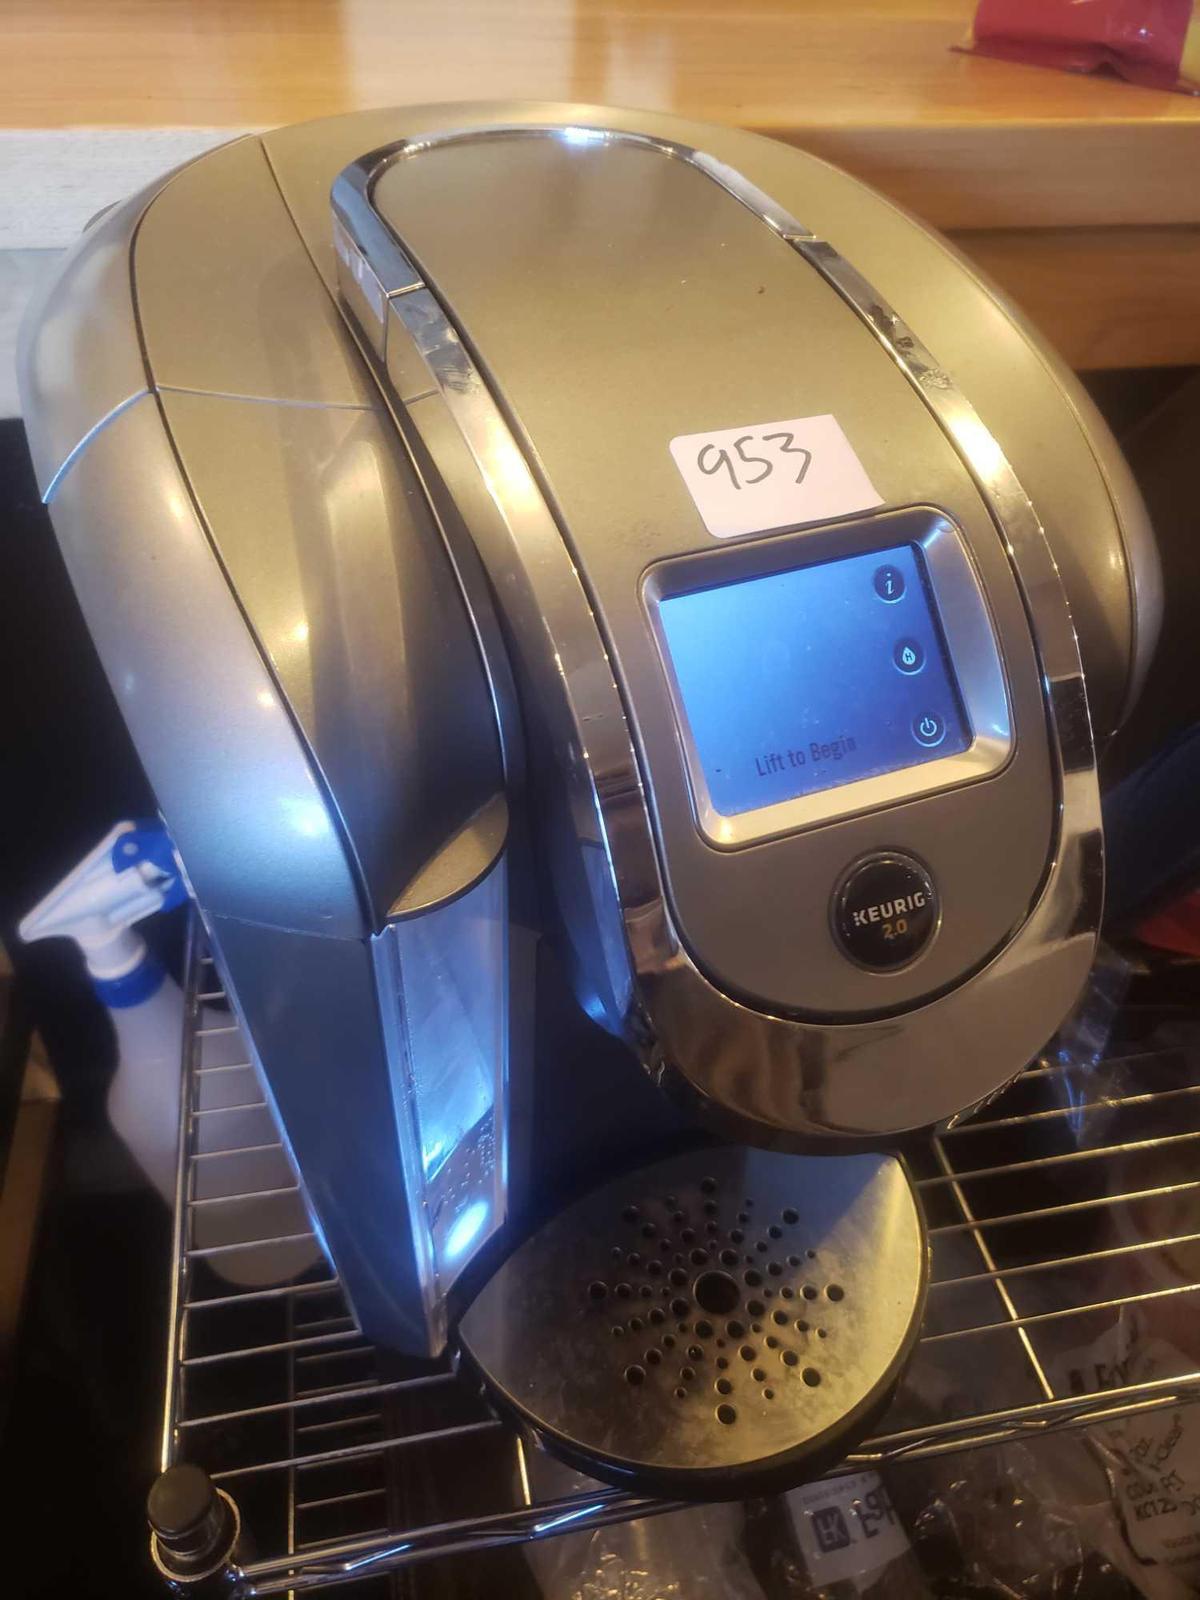 Keurig 2.0 coffee Machine